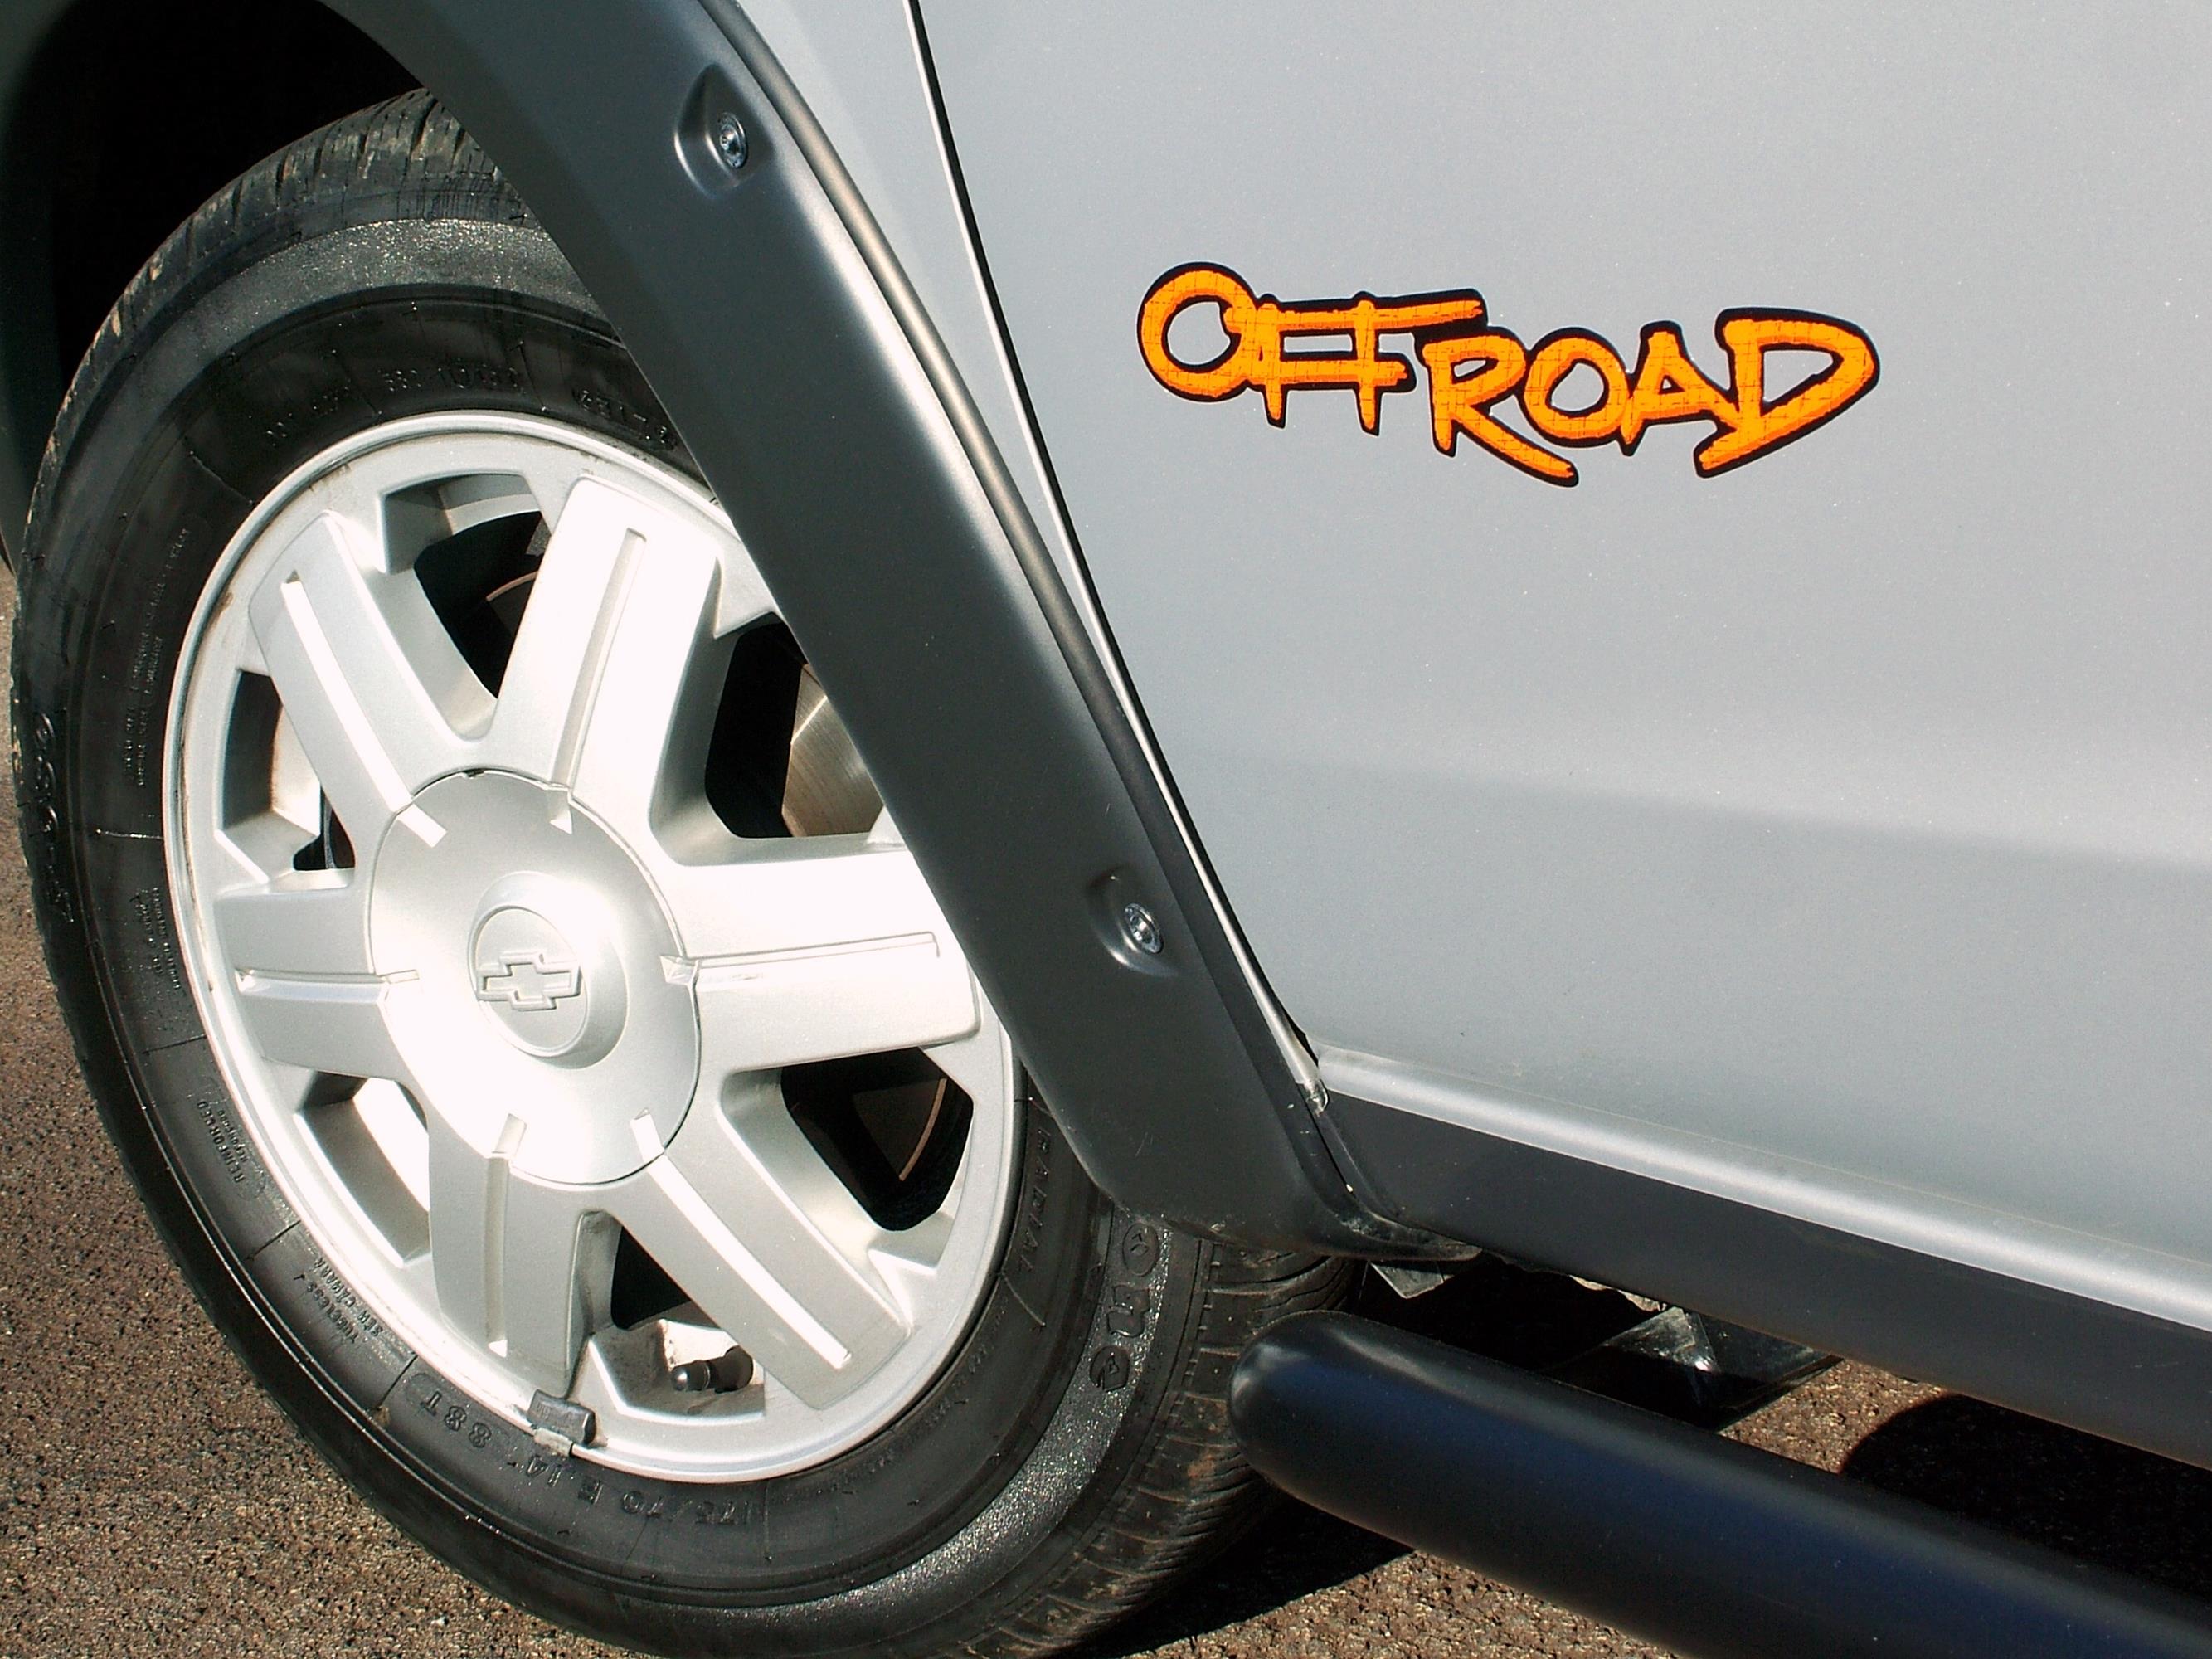 Detalhe-da-roda-da-picape-Montana-Off-Road-1.8-modelo-2005-da-Chevrolet-em-test.jpg